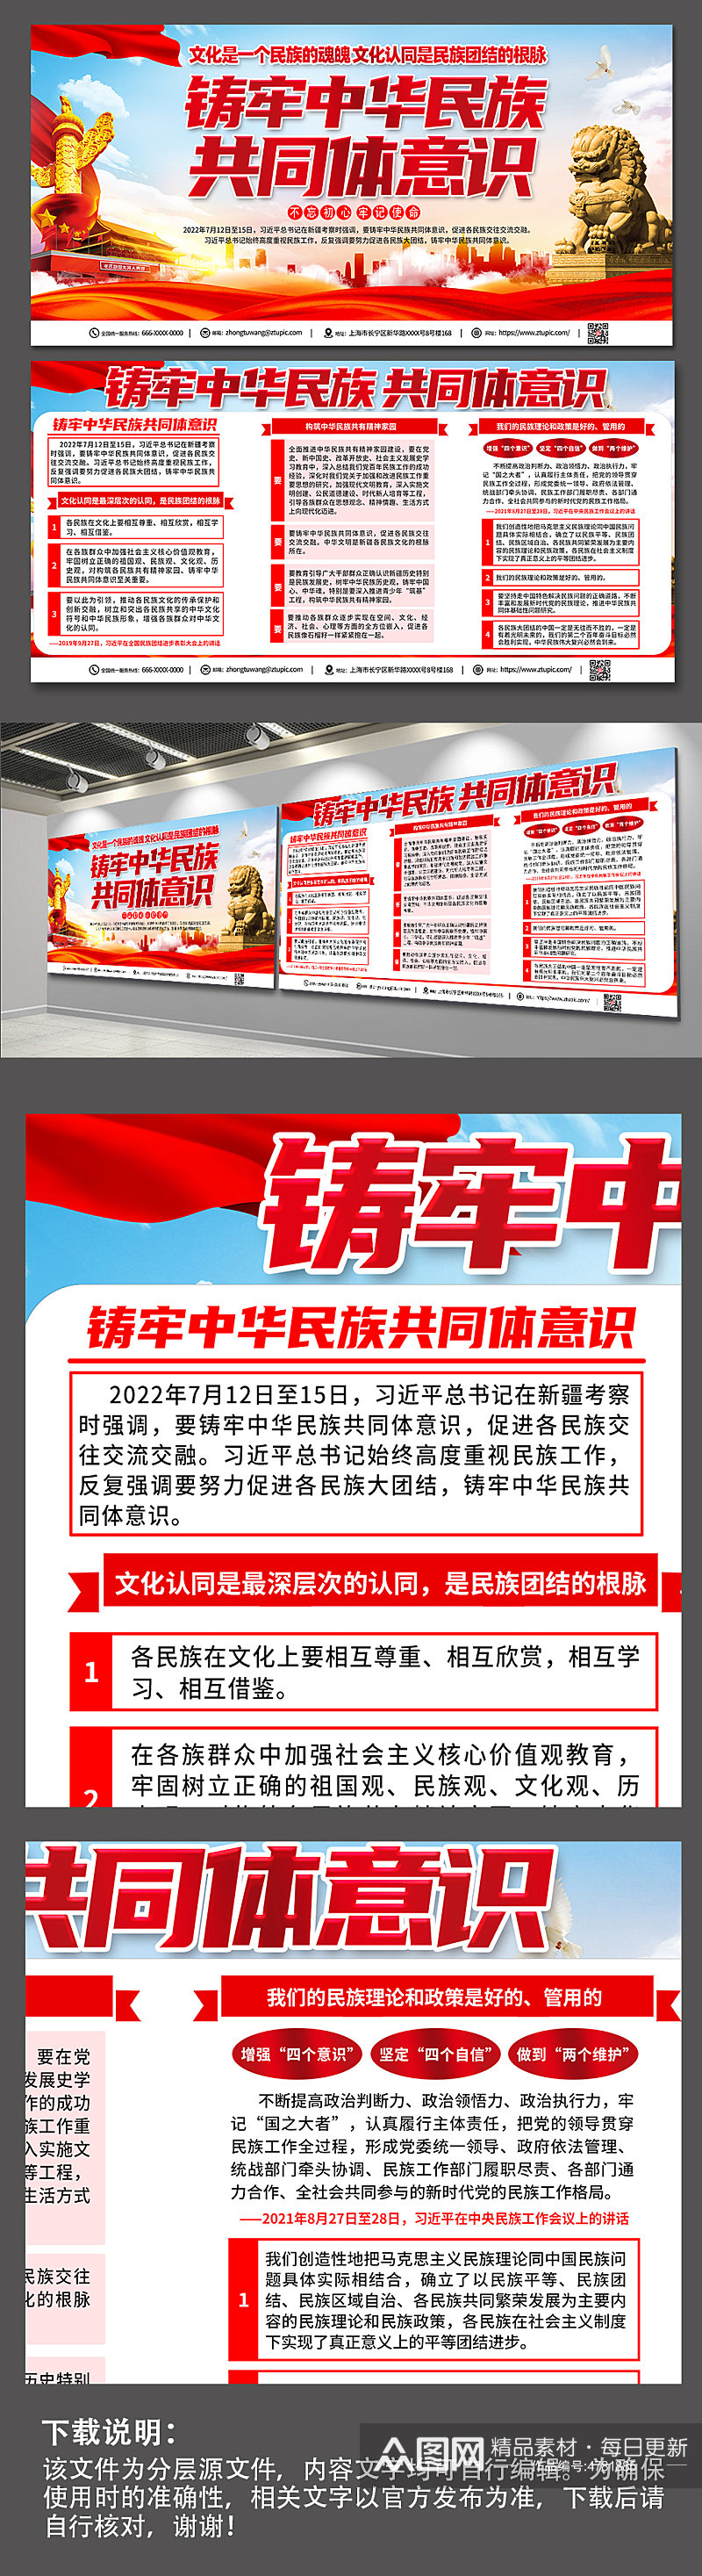 大气铸牢中华民族共同体意识党建宣传栏展板素材